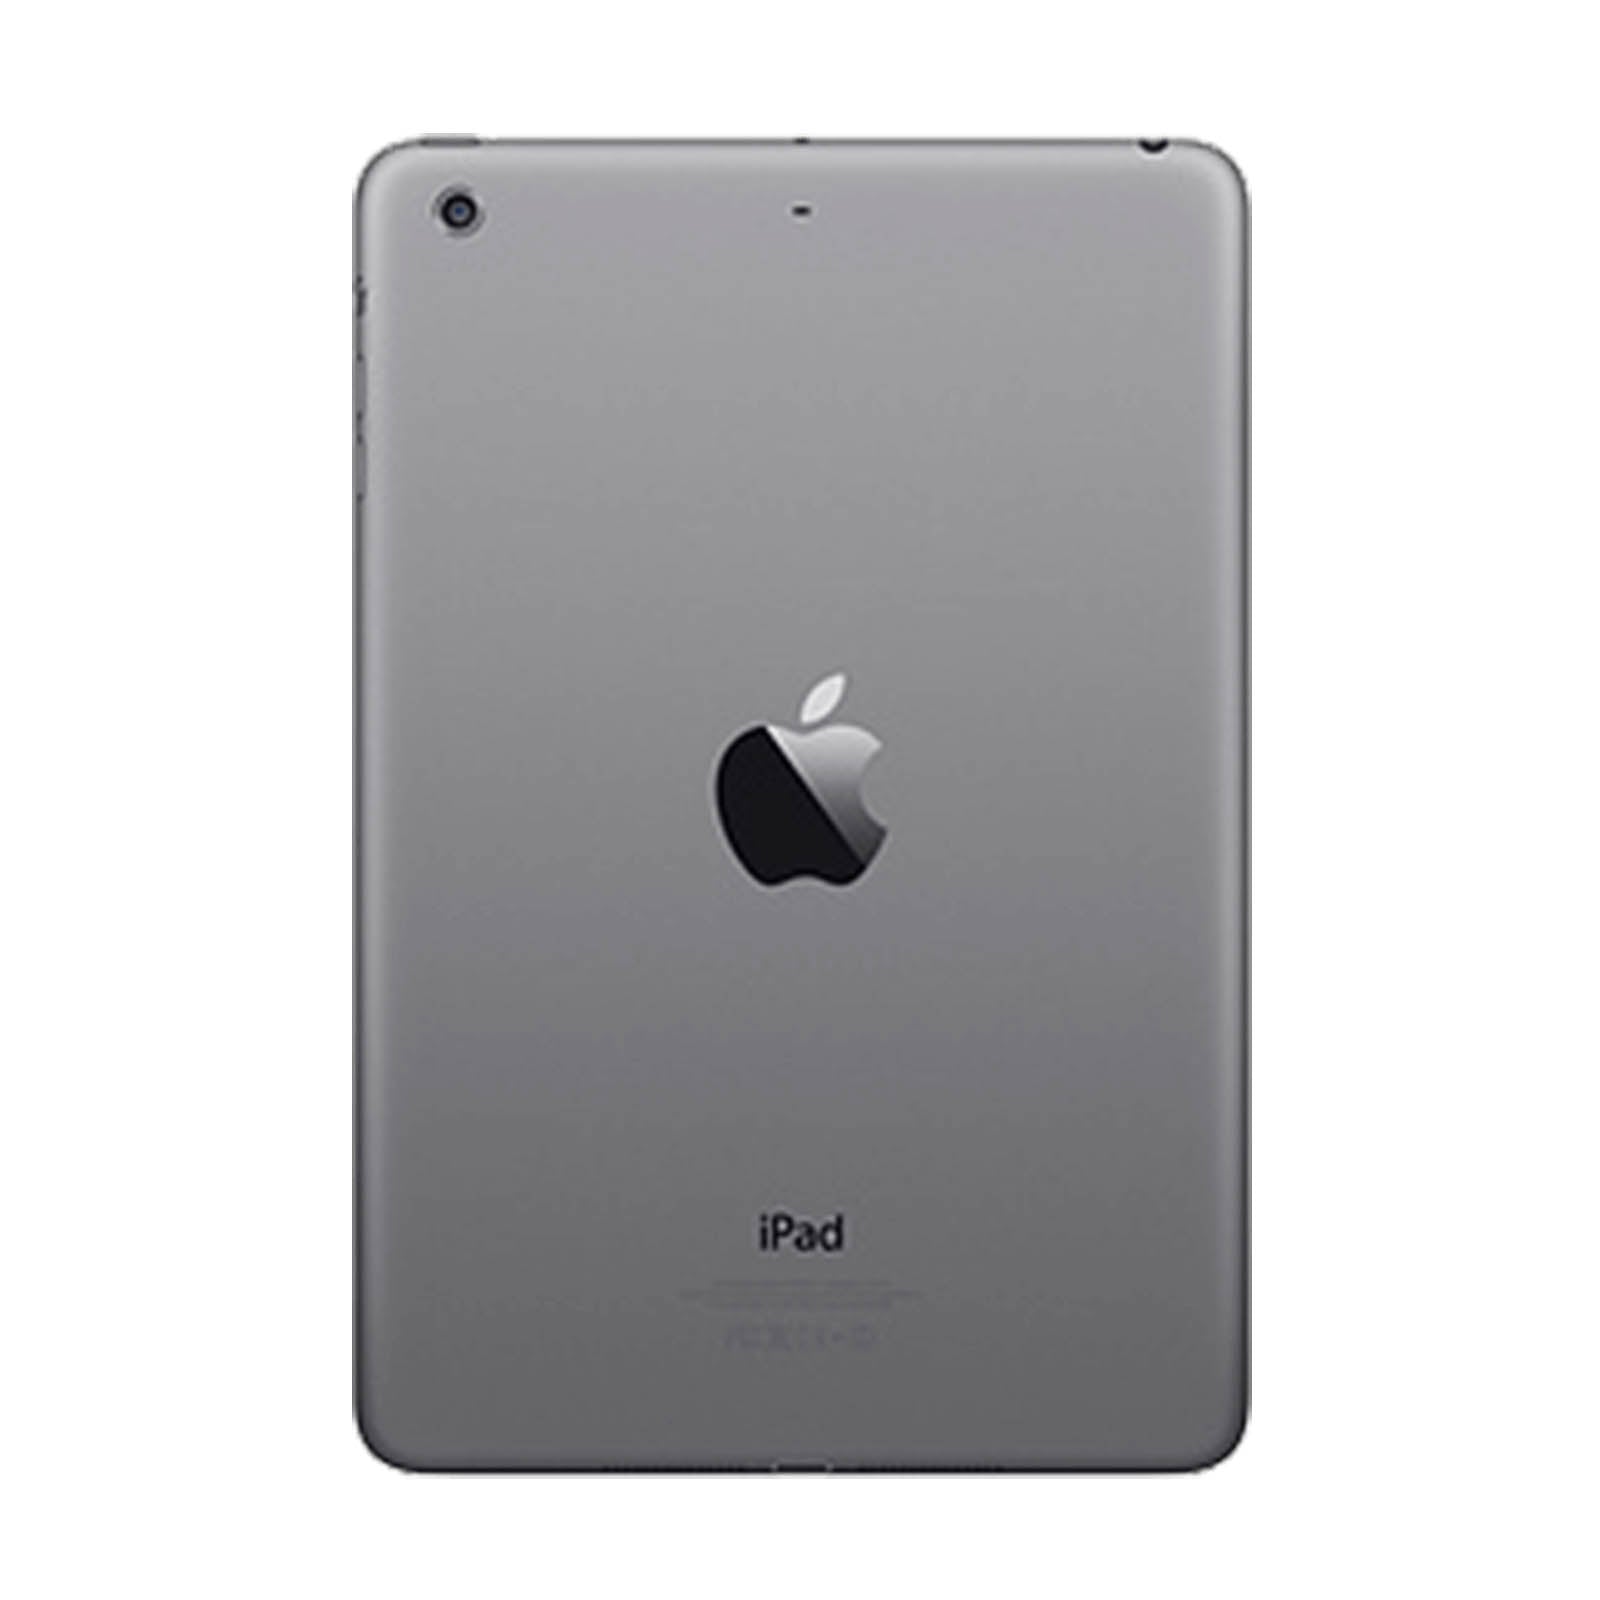 iPad Mini 3 128GB WiFi -Space Grey- Very Good